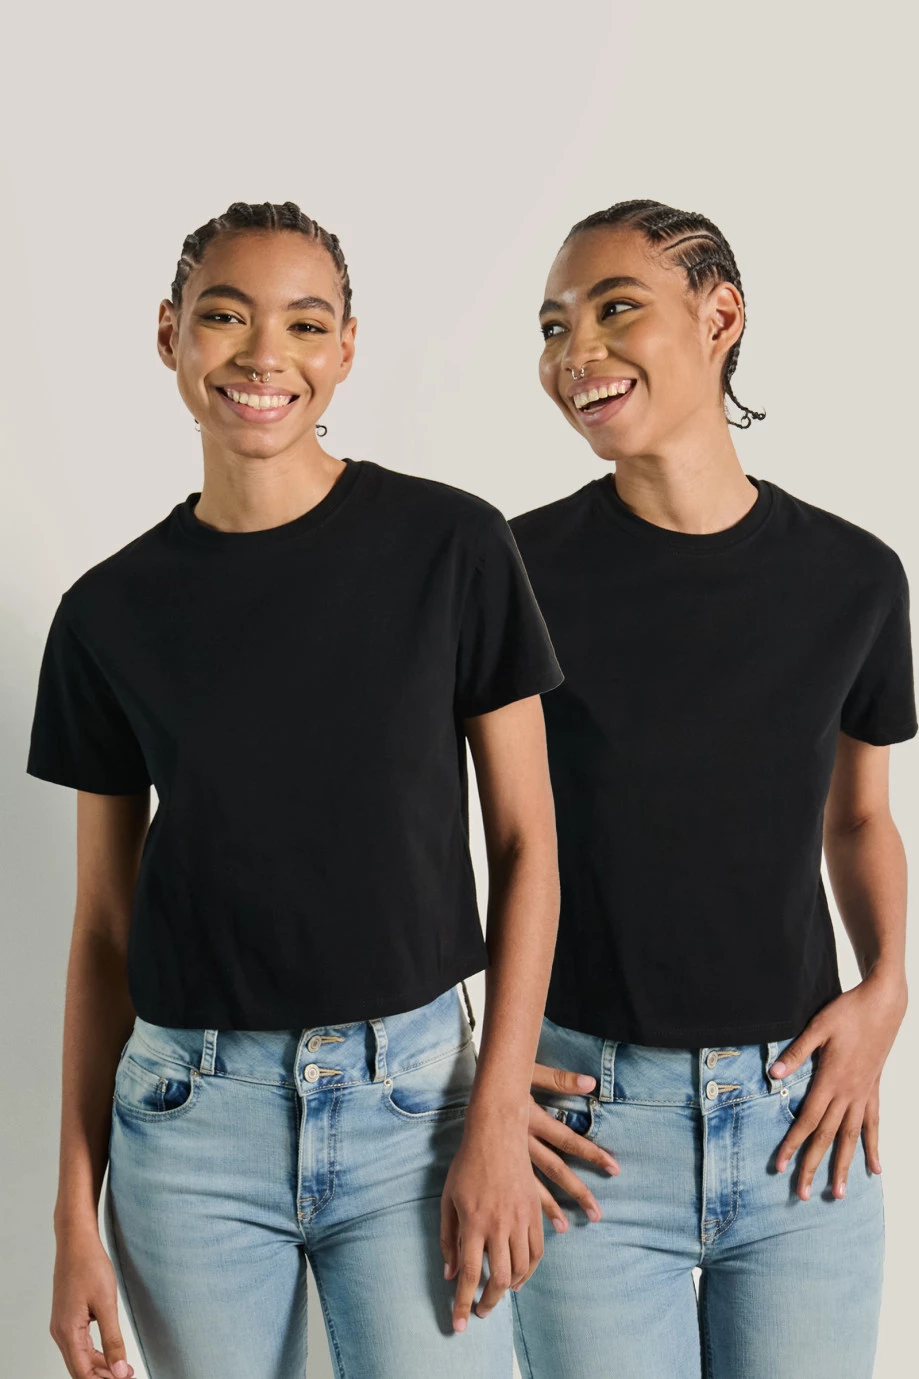 Pack de camisetas crop top X2 negras en algodón